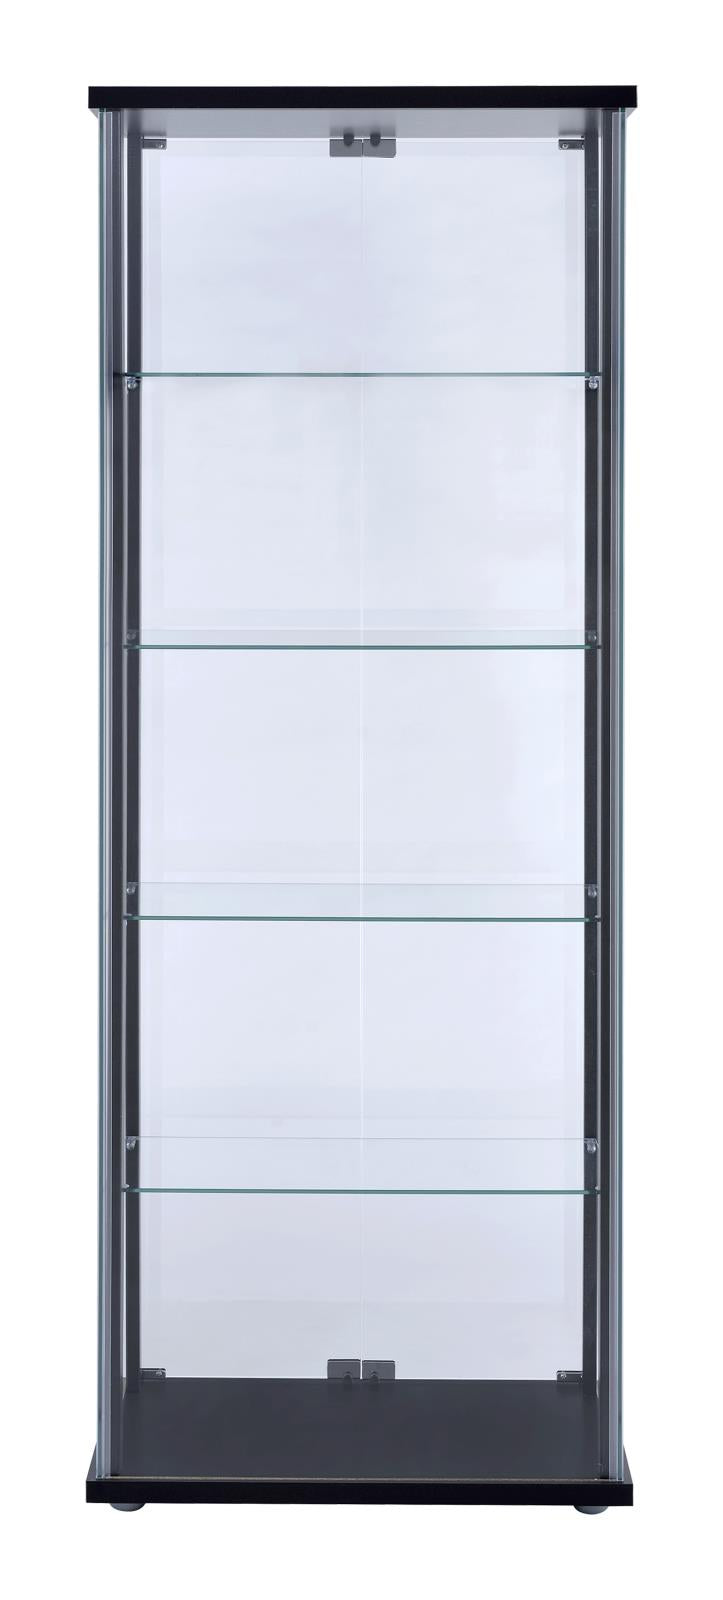 Delphinium 5-shelf Glass Curio Cabinet Black and Clear - 950170 - Luna Furniture